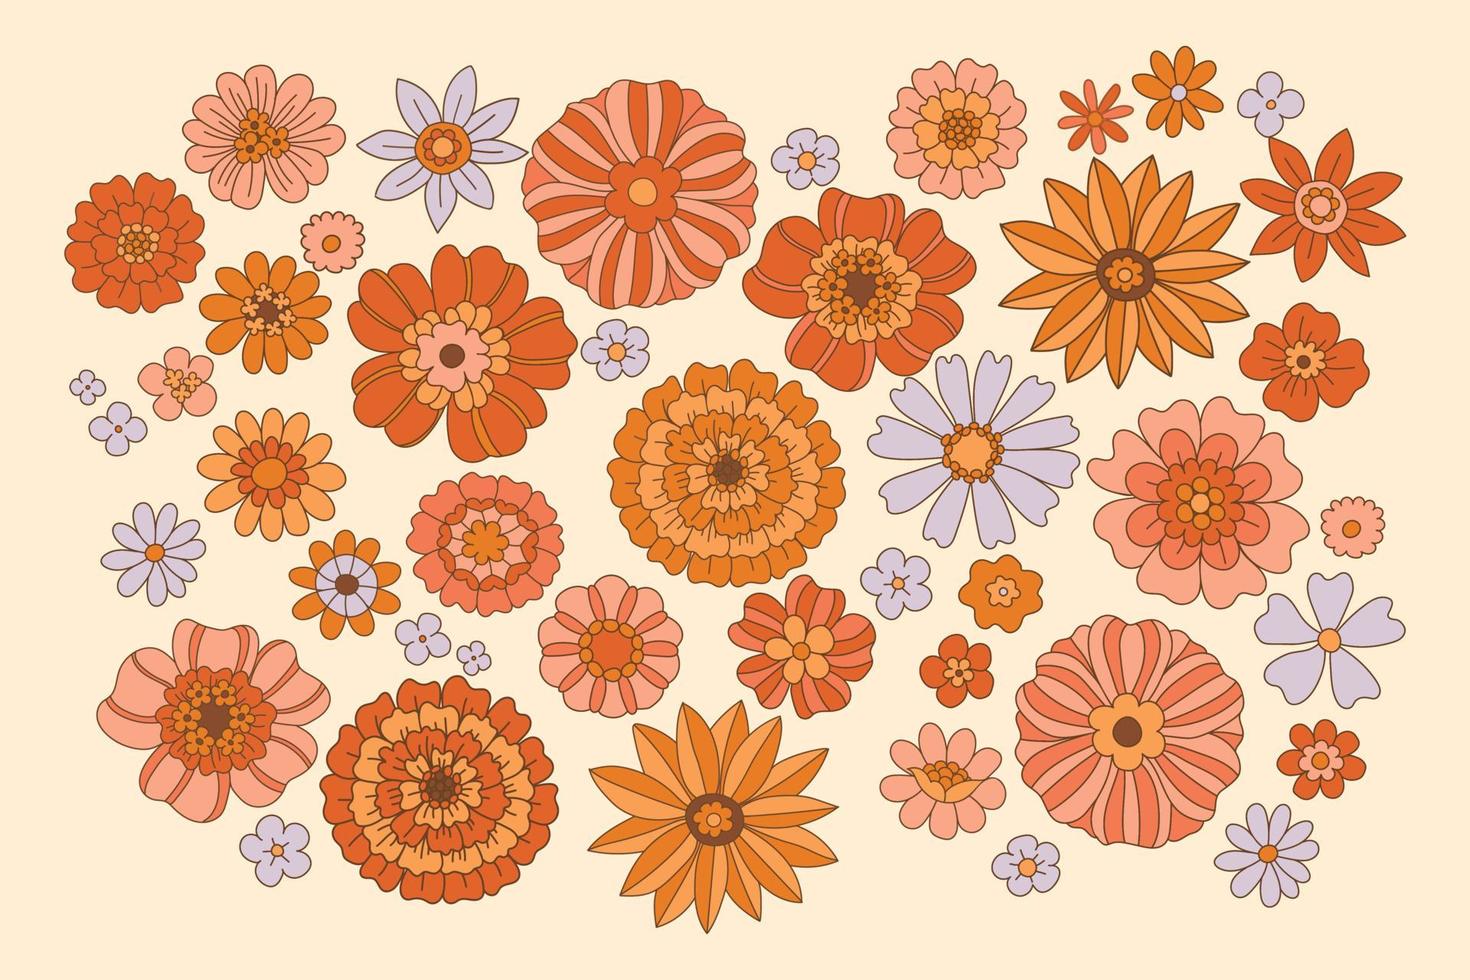 Flores de los 70. ilustración vectorial estética hippie. conjunto de elementos florales al estilo retro de los años 70, 60. fondo floral boho chic. flover power.groovy diseño. vector